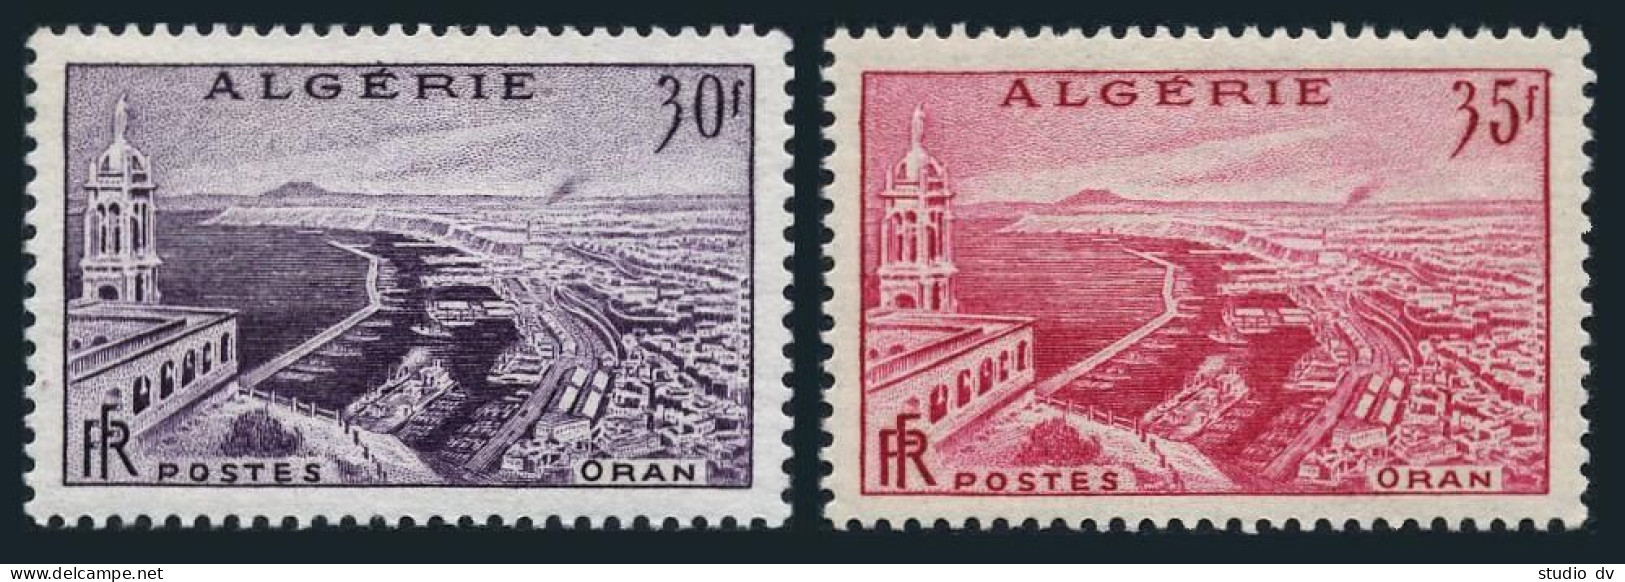 Algeria 281-282,MNH.Michel 360-361. View Of Oran,1956-1958. - Algeria (1962-...)